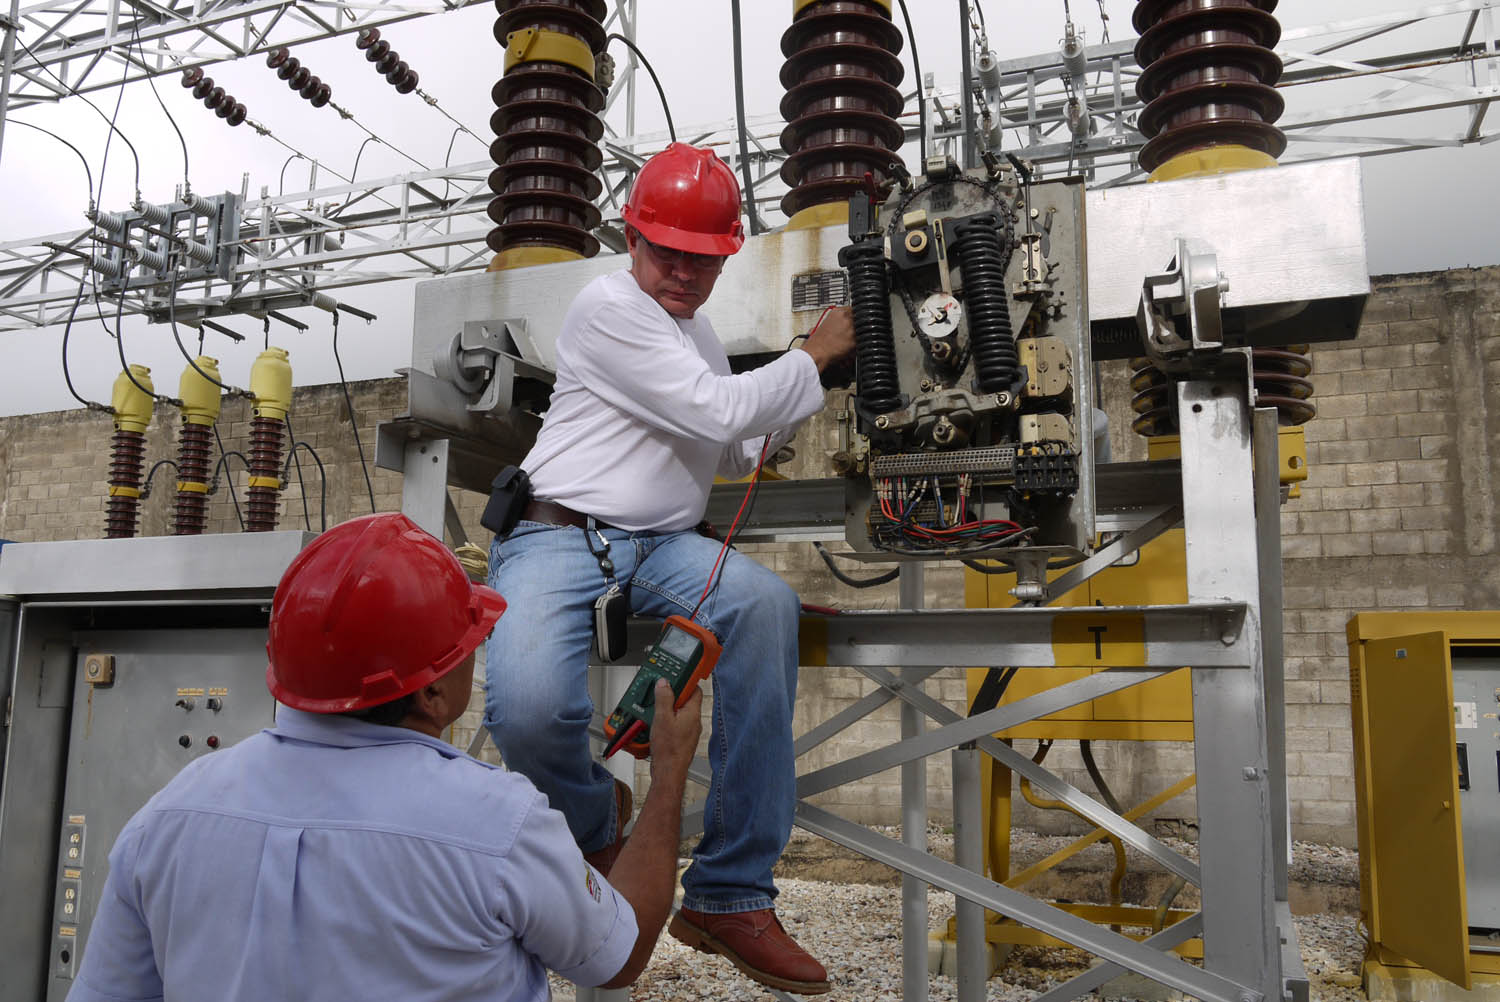 Restablecido el servicio eléctrico en zonas de Chacao